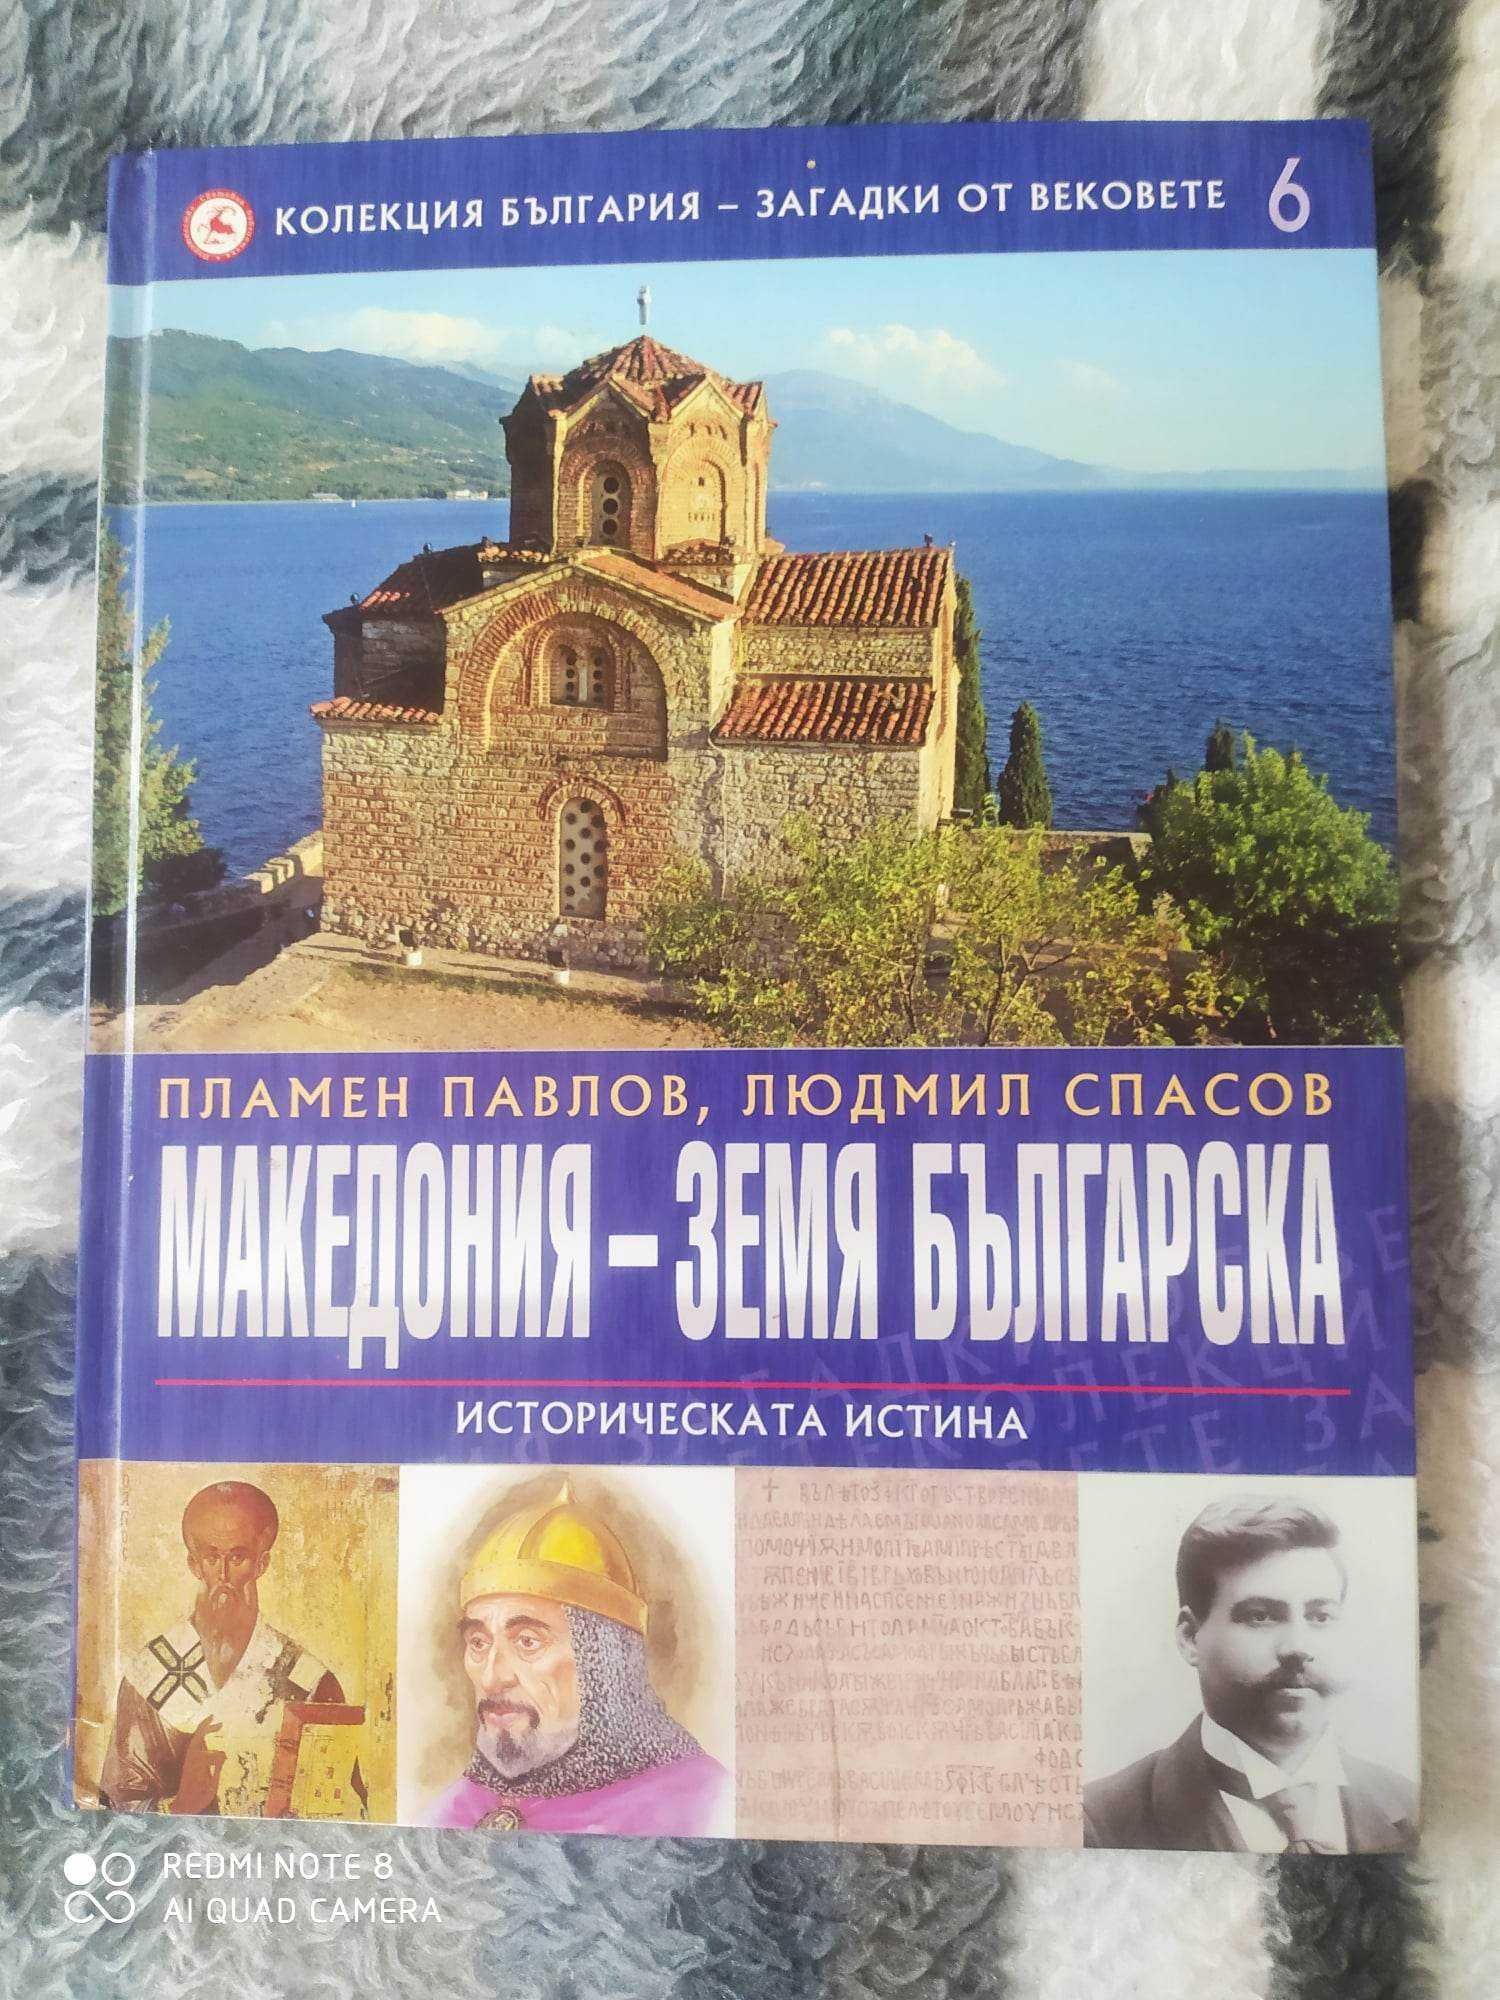 Нова луксозна енциклопедия Македония -земя българска, 2009